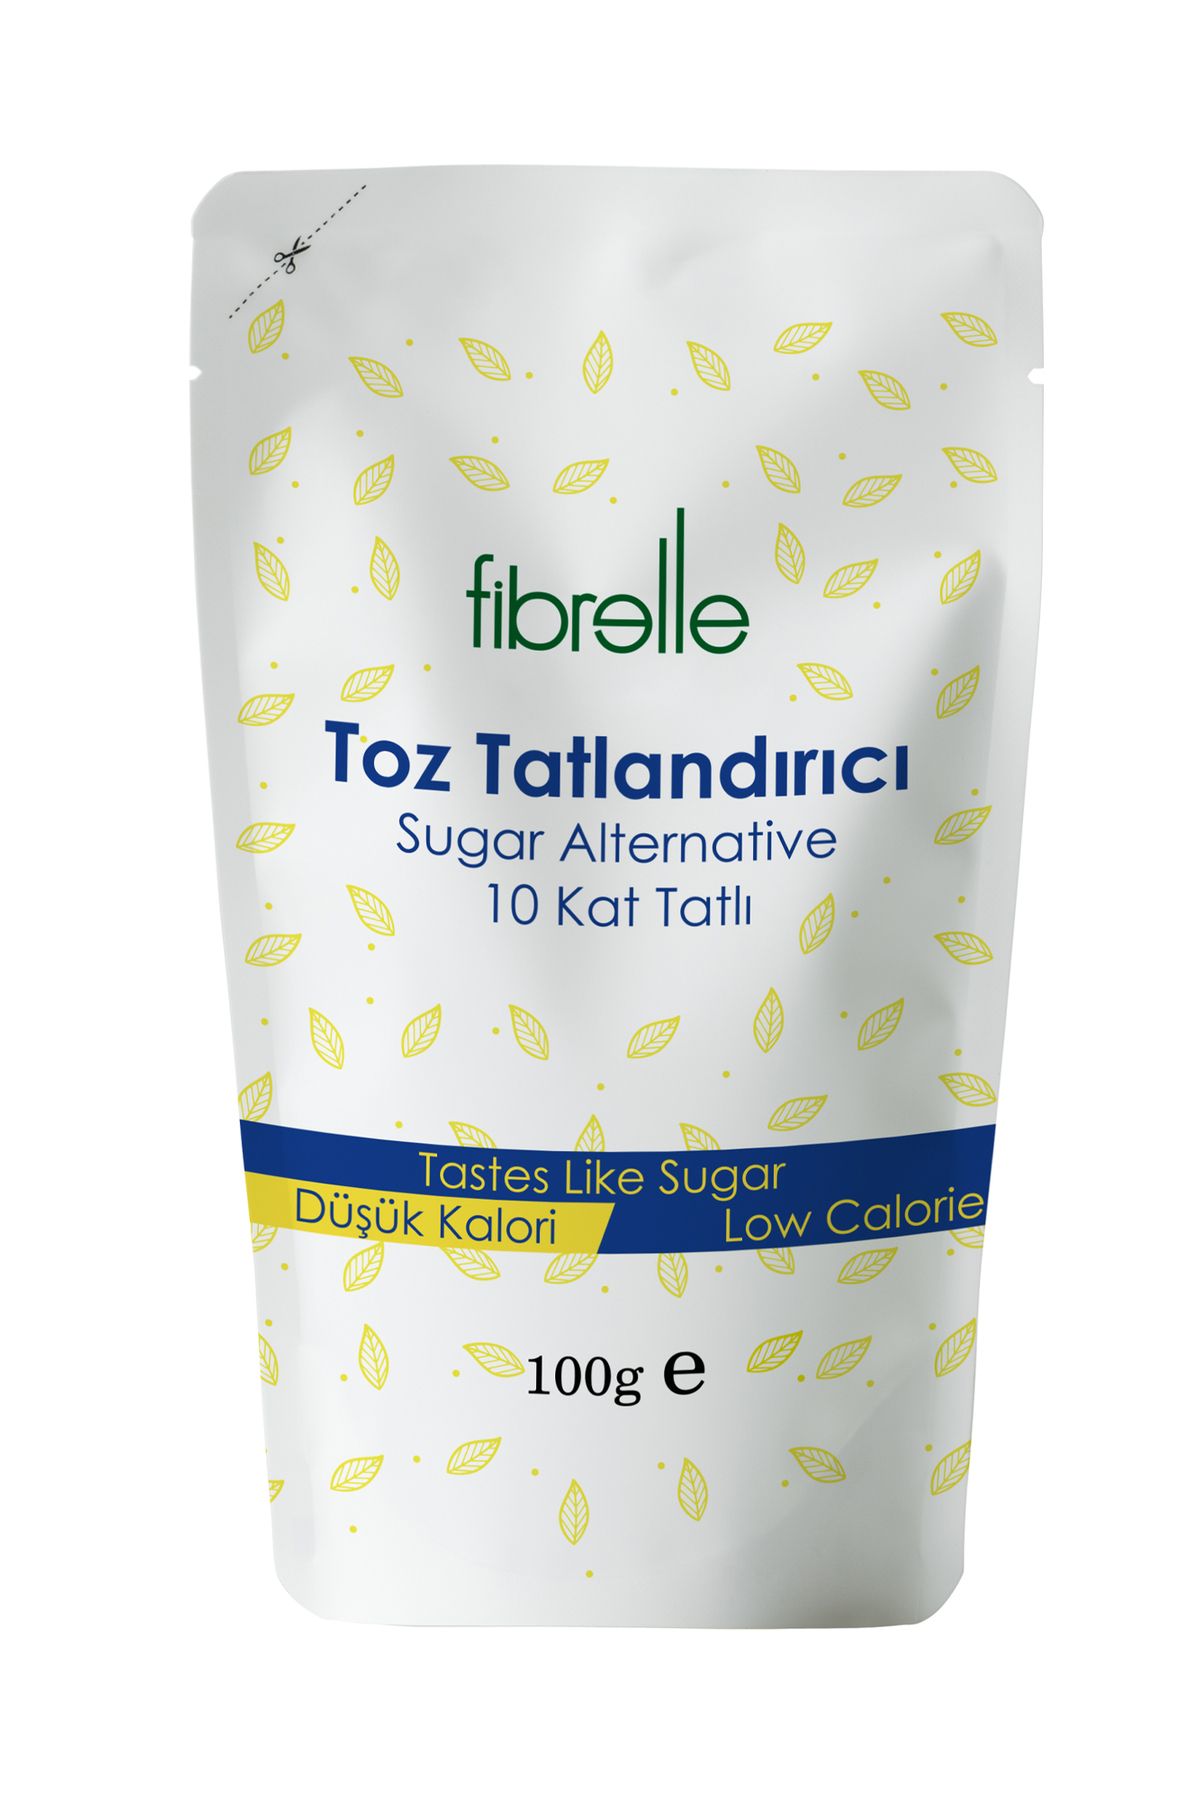 Fibrelle Toz Tatlandırıcı - Kalorisiz 10 Kat Daha Tatlı - Ultra Plus